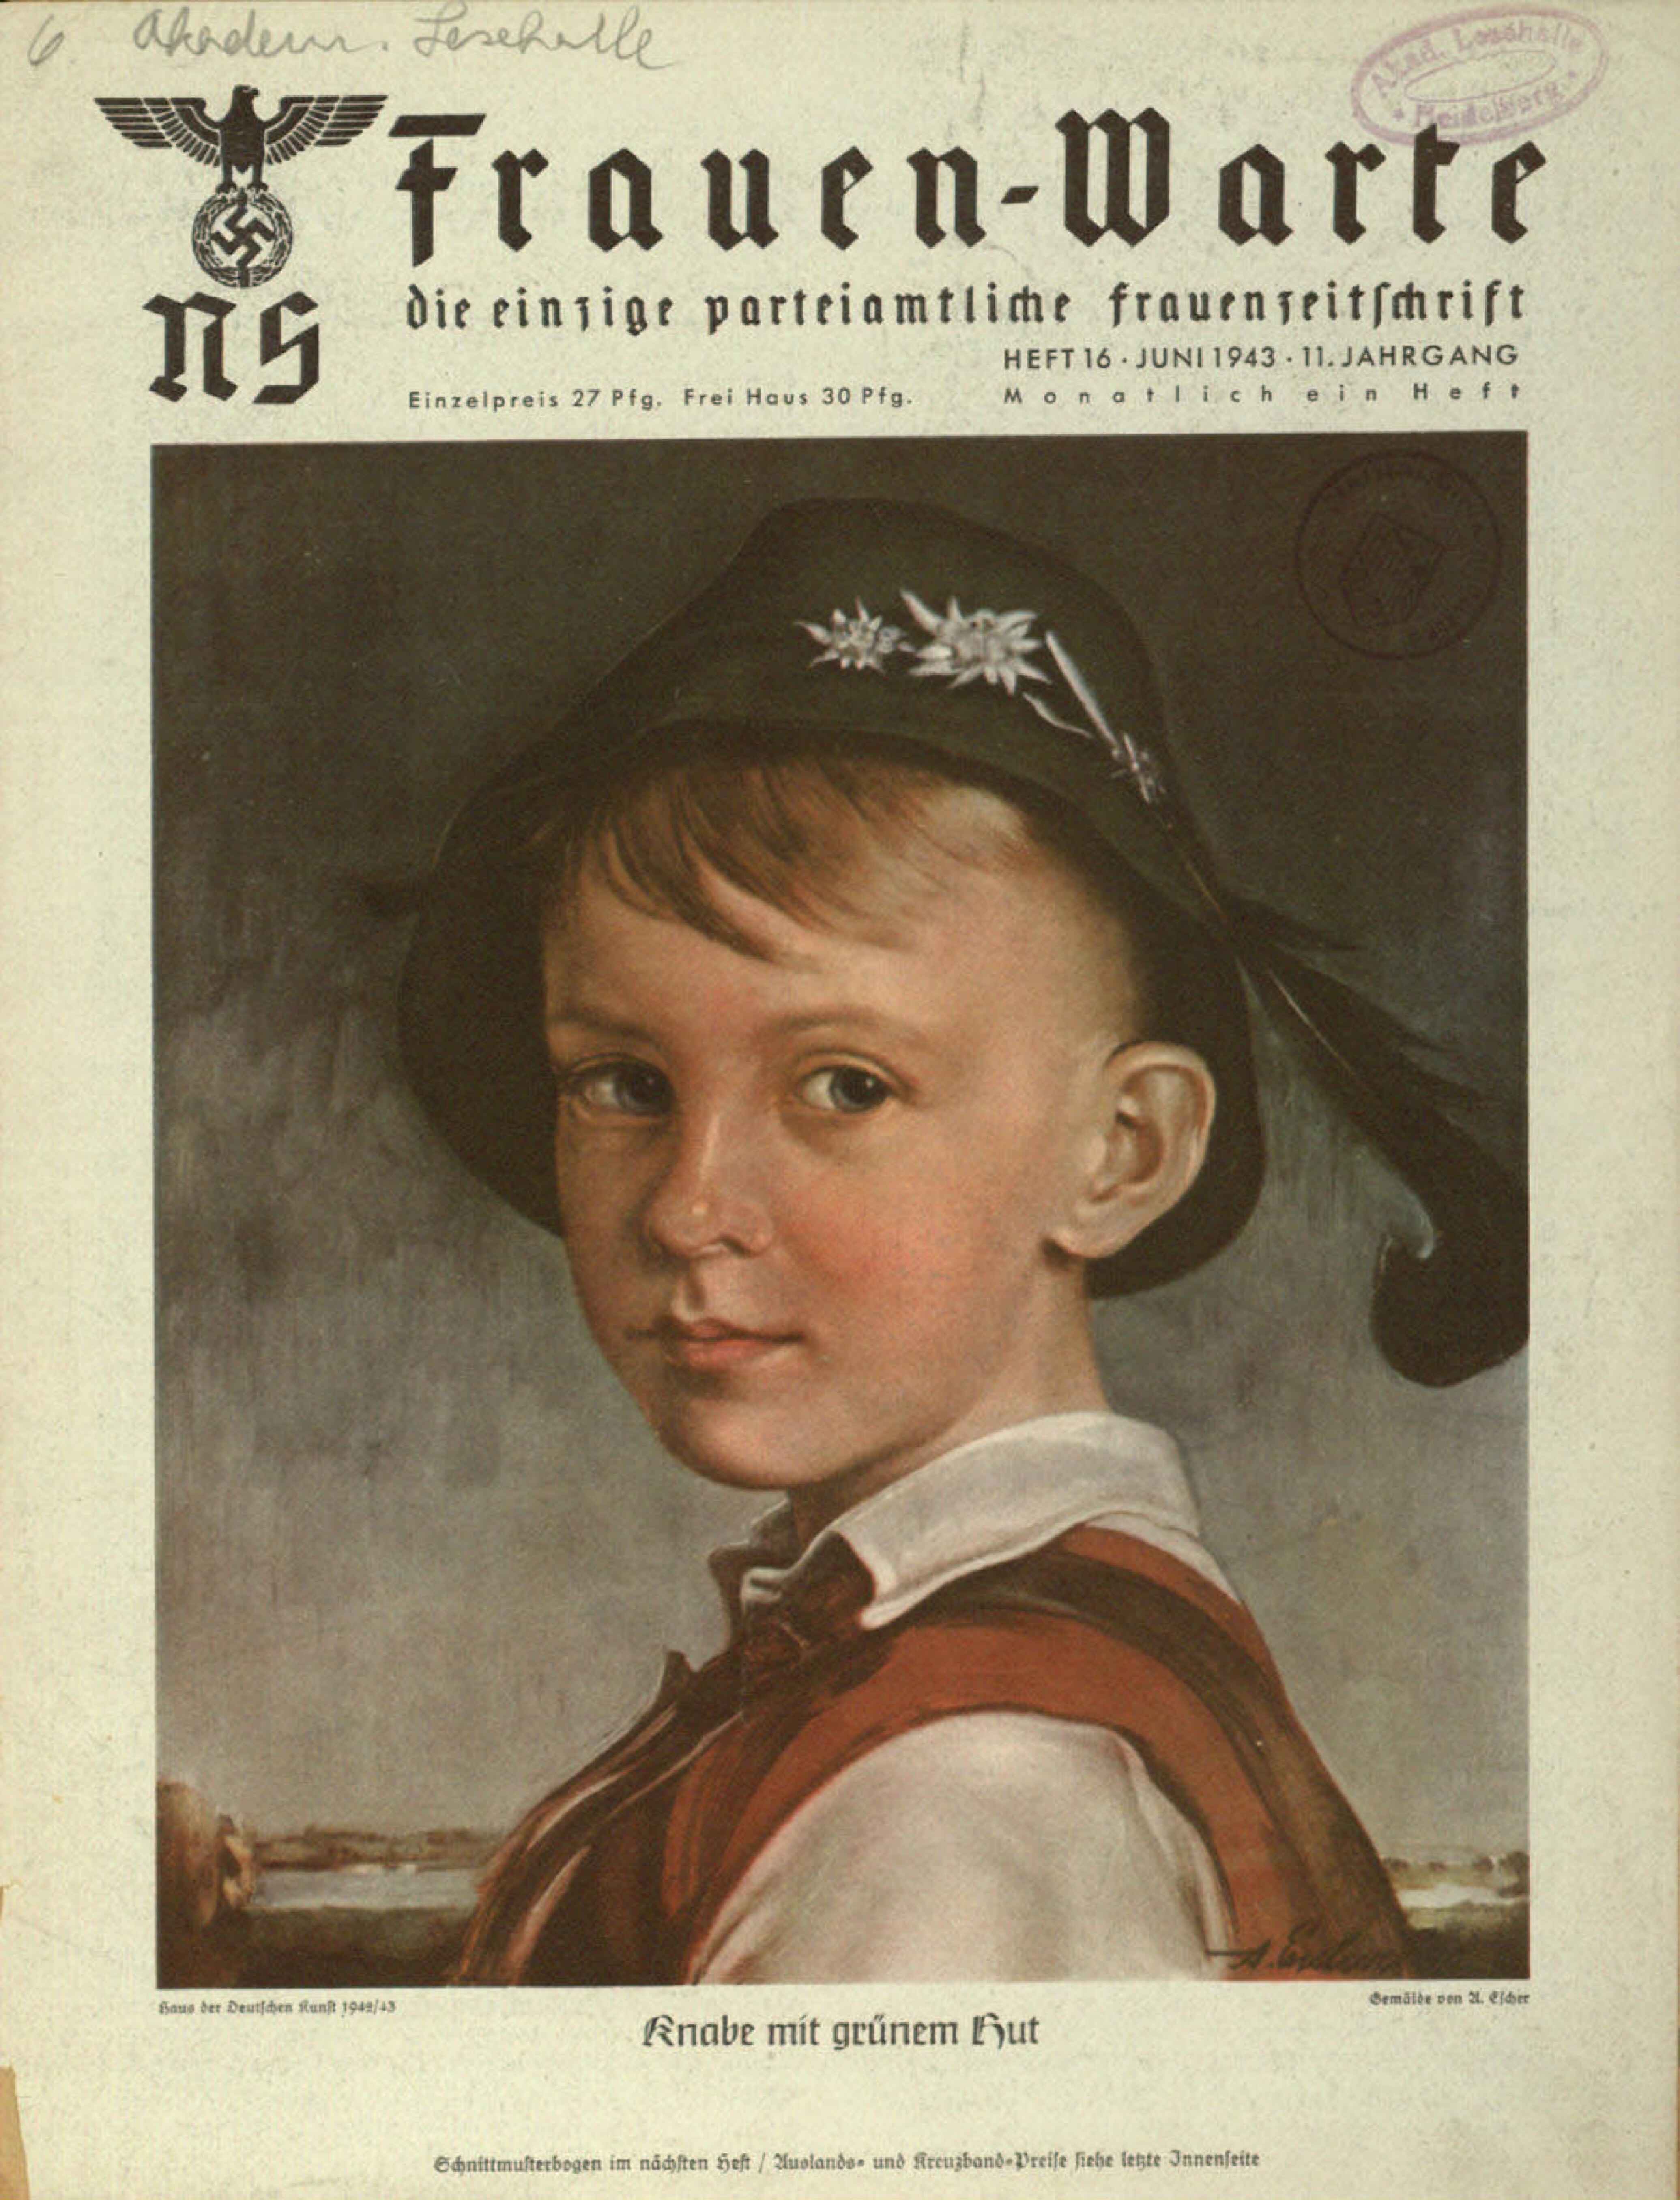 Frauen-Warte 11. Jahrgang Heft 16 (1943, 16 S., Scan, Fraktur)